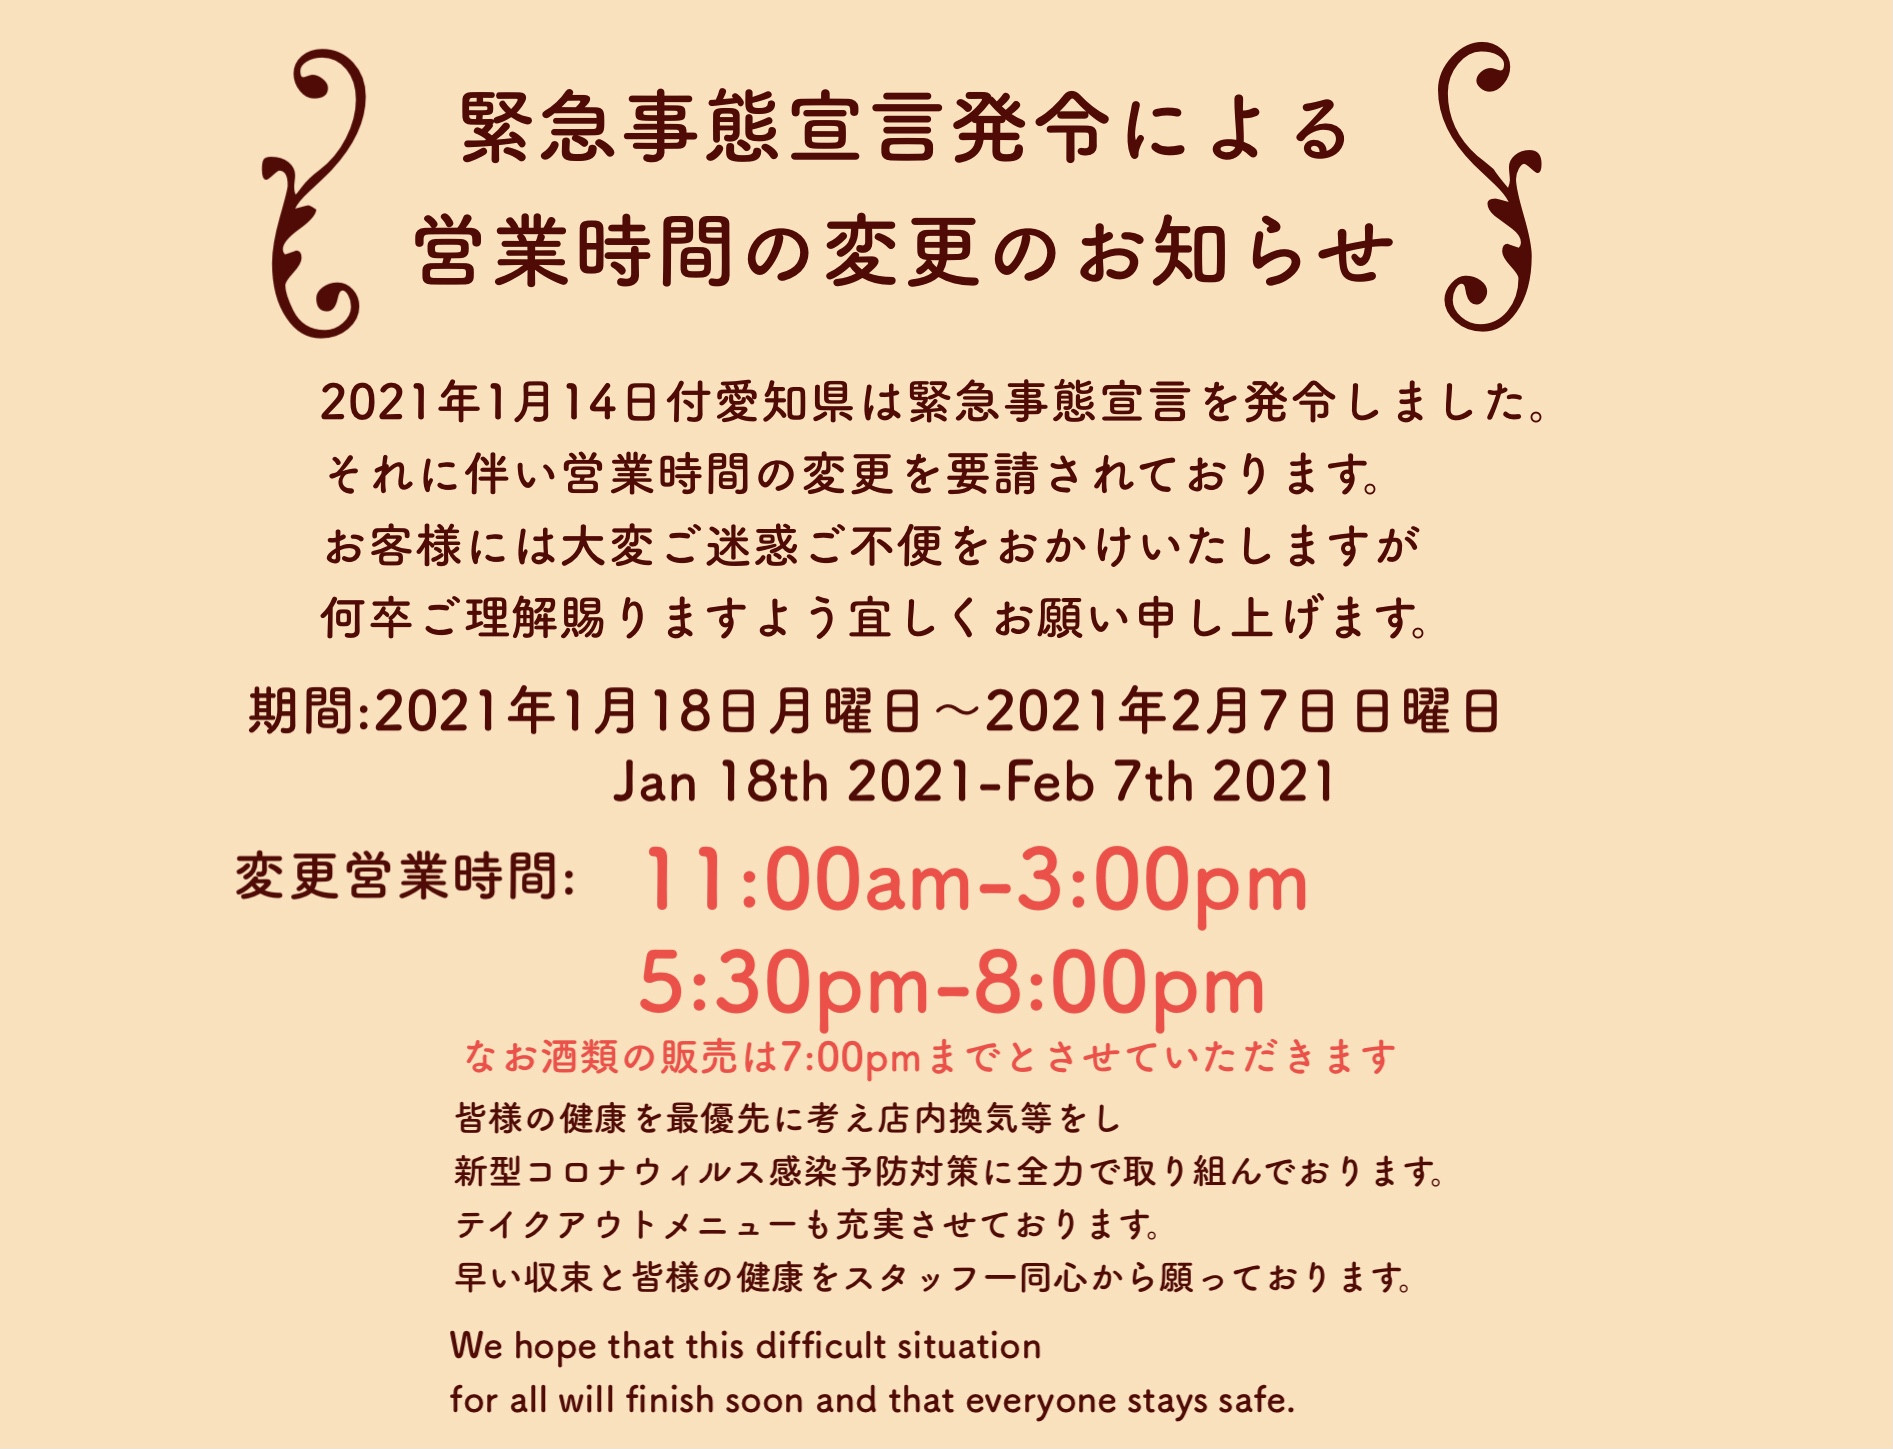 愛知県緊急事態宣言発令に伴い営業時間変更のお知らせ